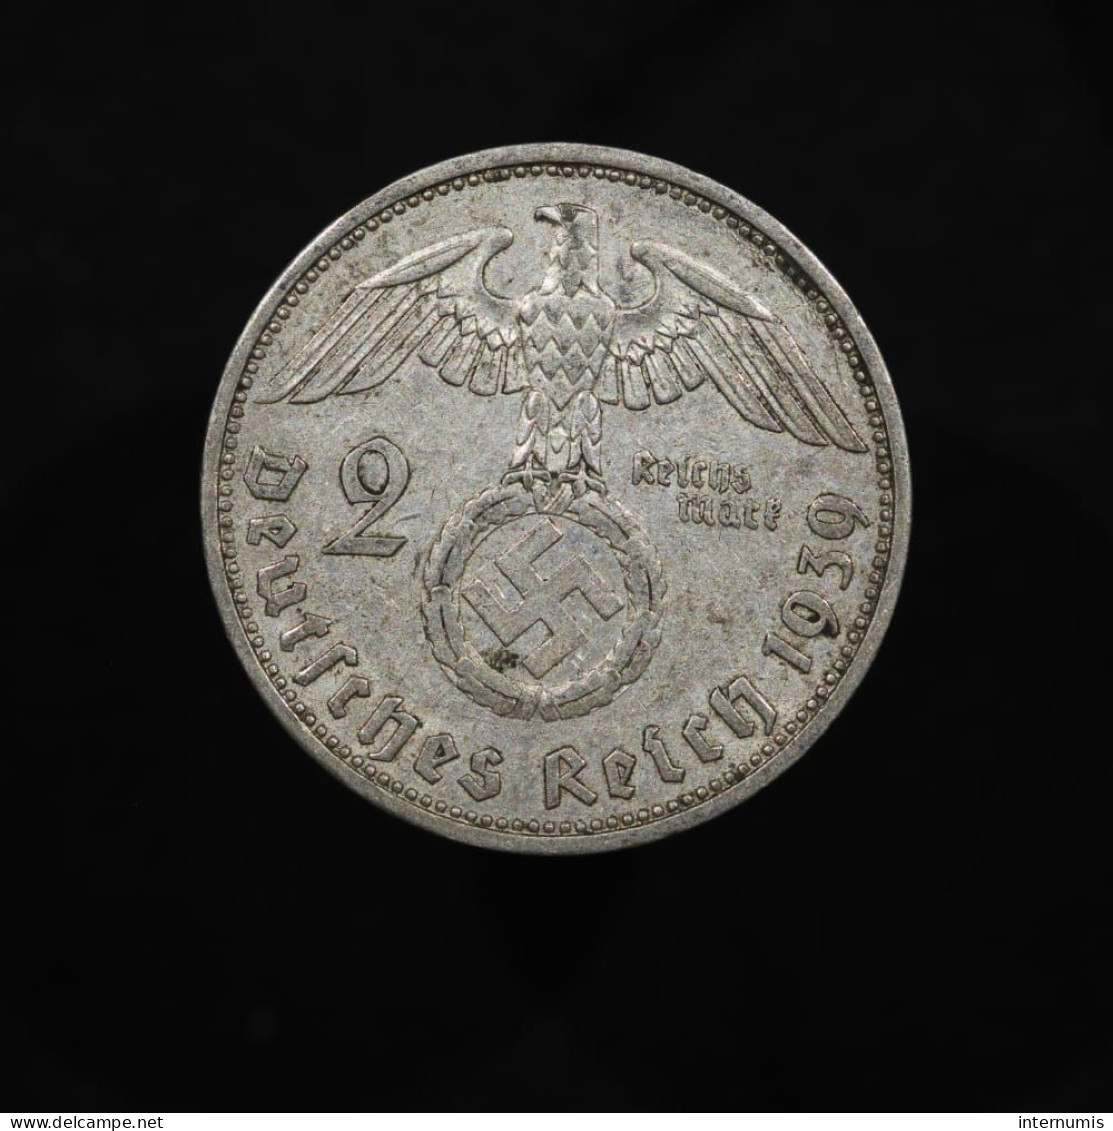 Allemagne / Germany, Von Hindenburg, 2 Reichsmark, 1939, A - Berlin, Argent (Silver), SUP (AU), KM#93, Schön#90 - 2 Reichsmark